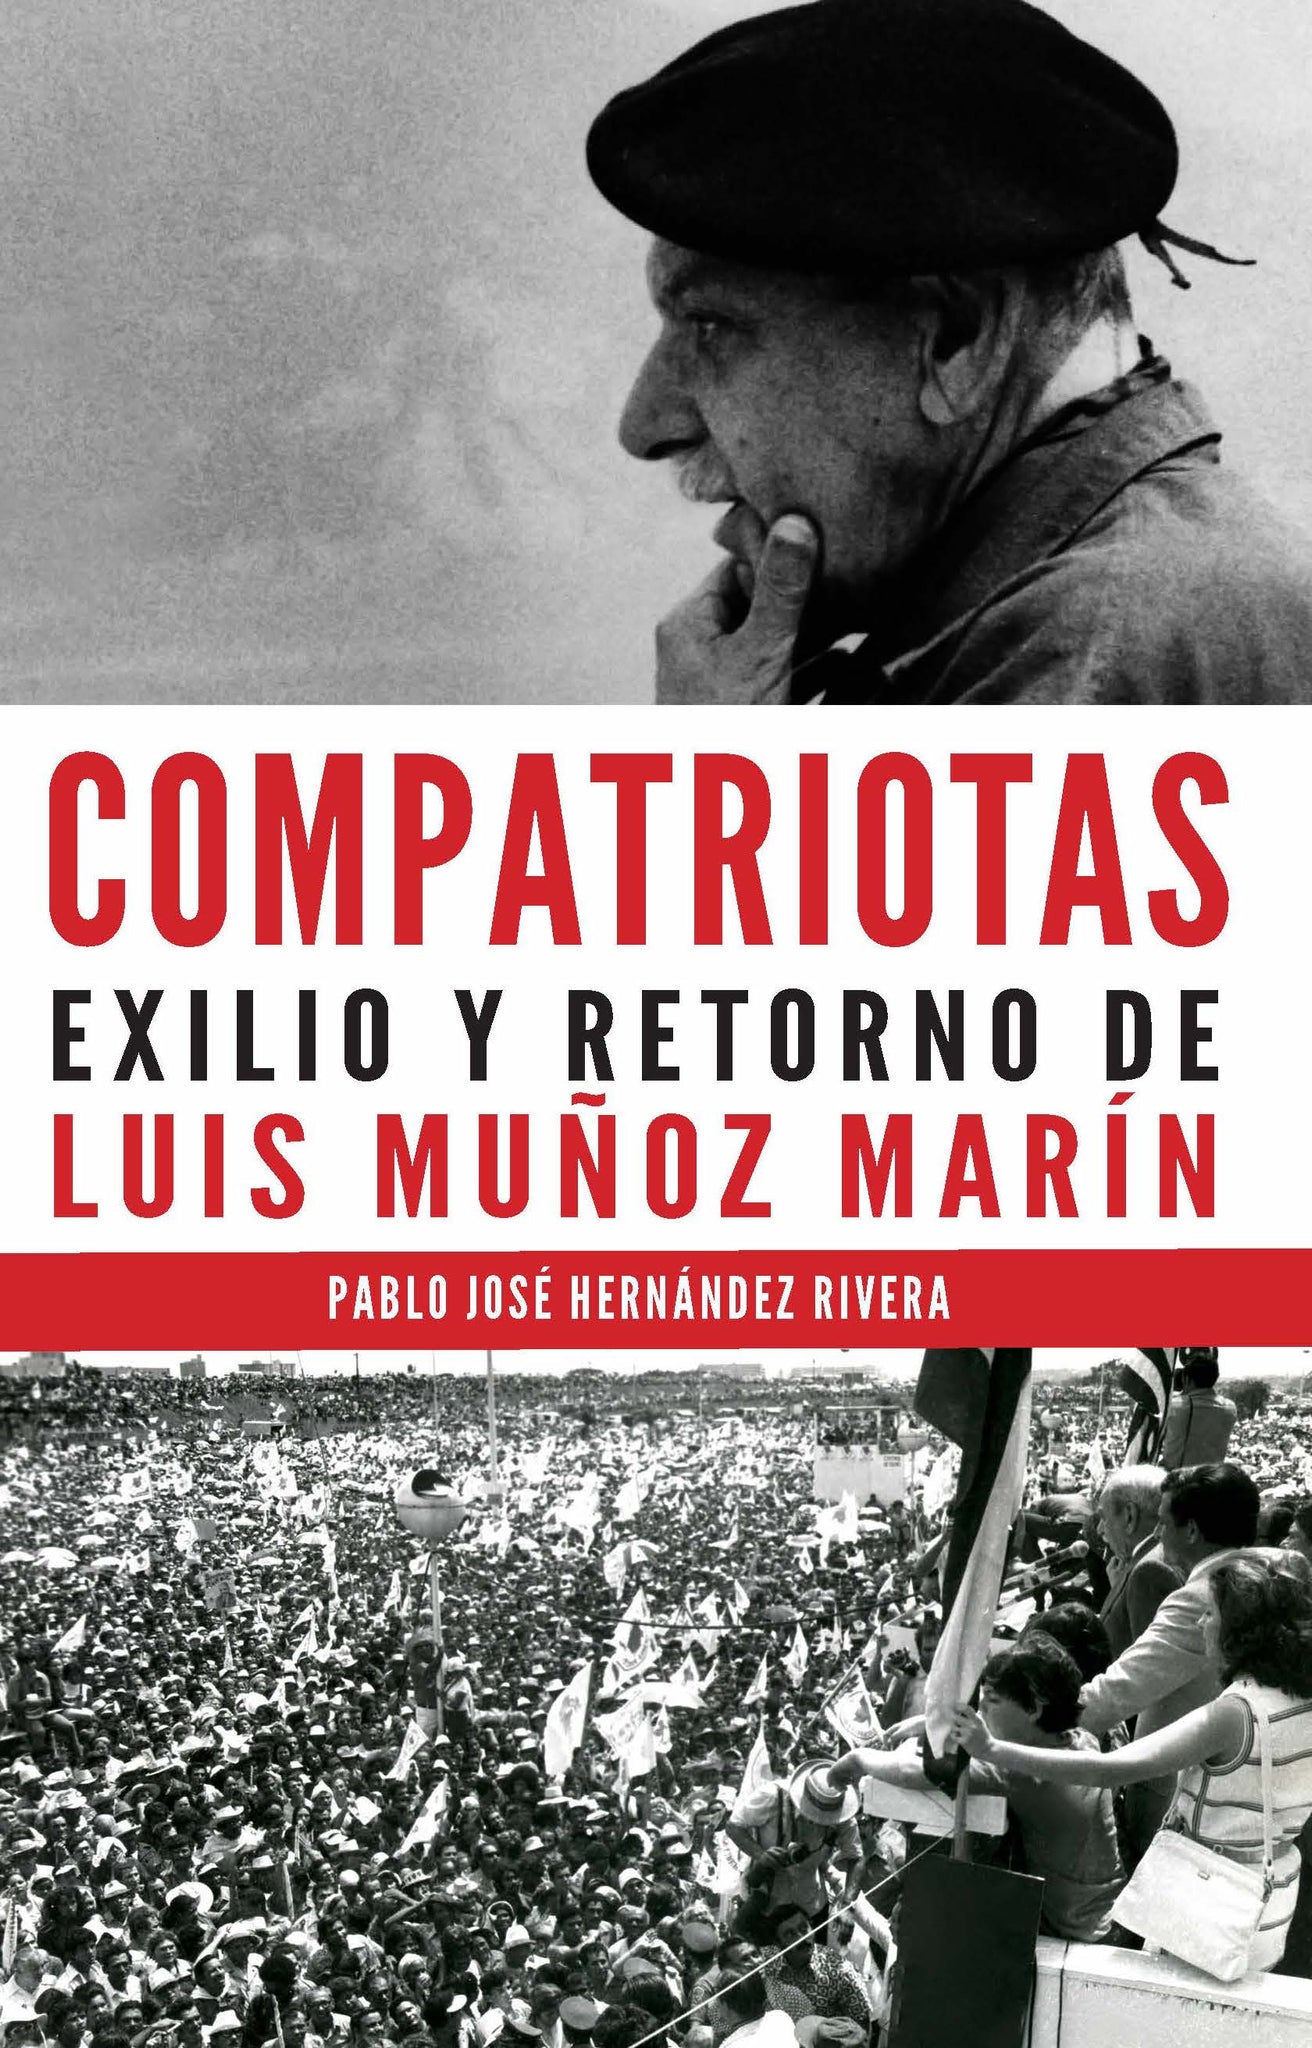 Compatriotas: Exilio y retorno de Luis Muñoz Marín